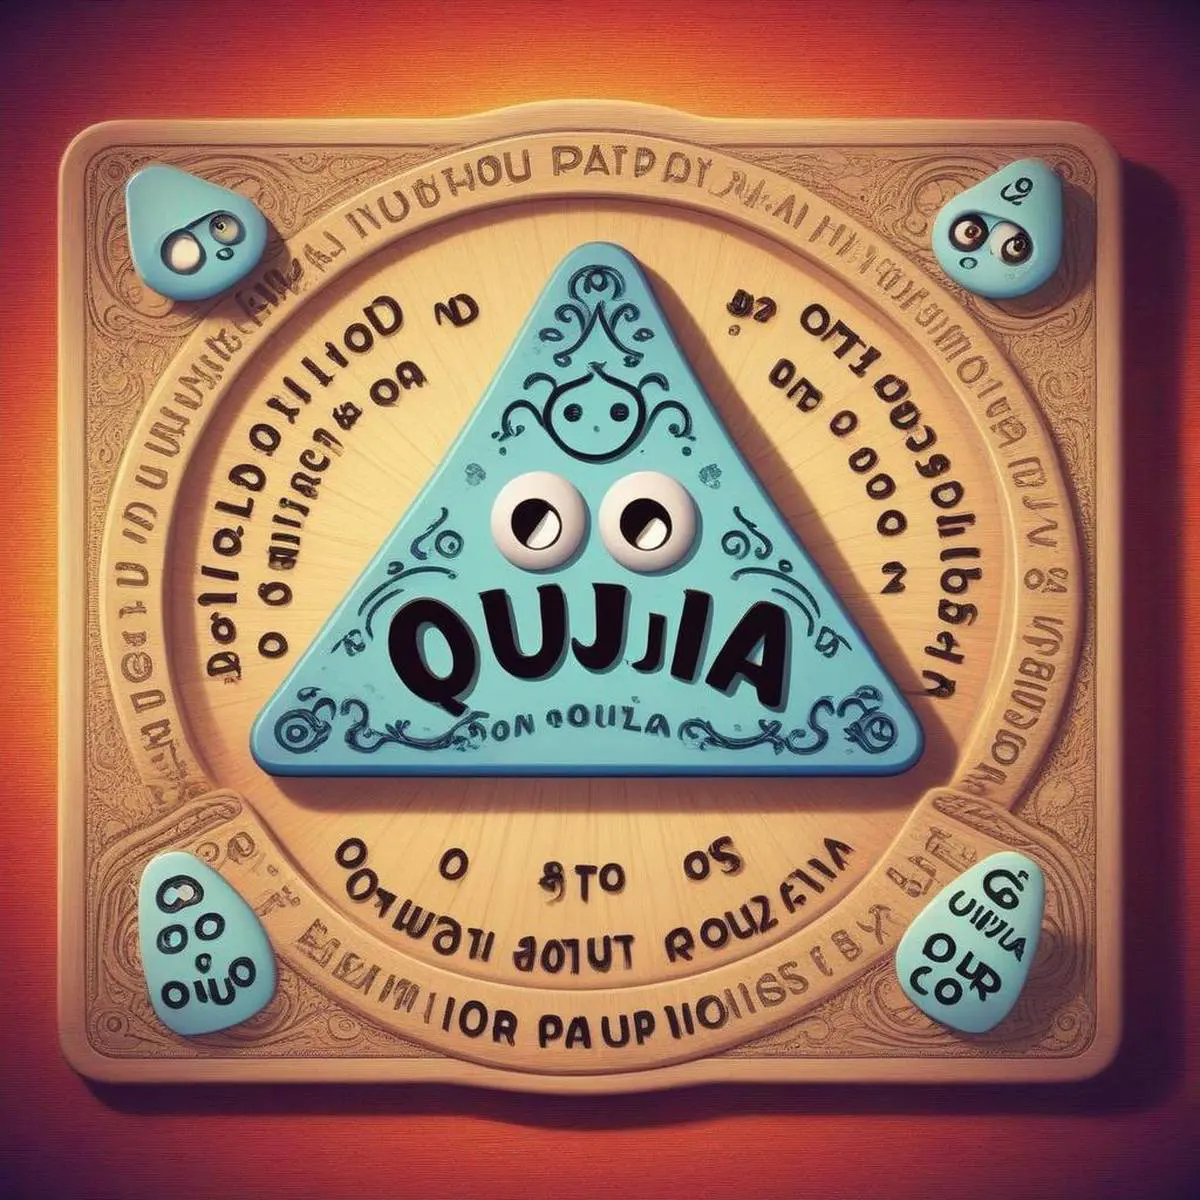 Ouija puns